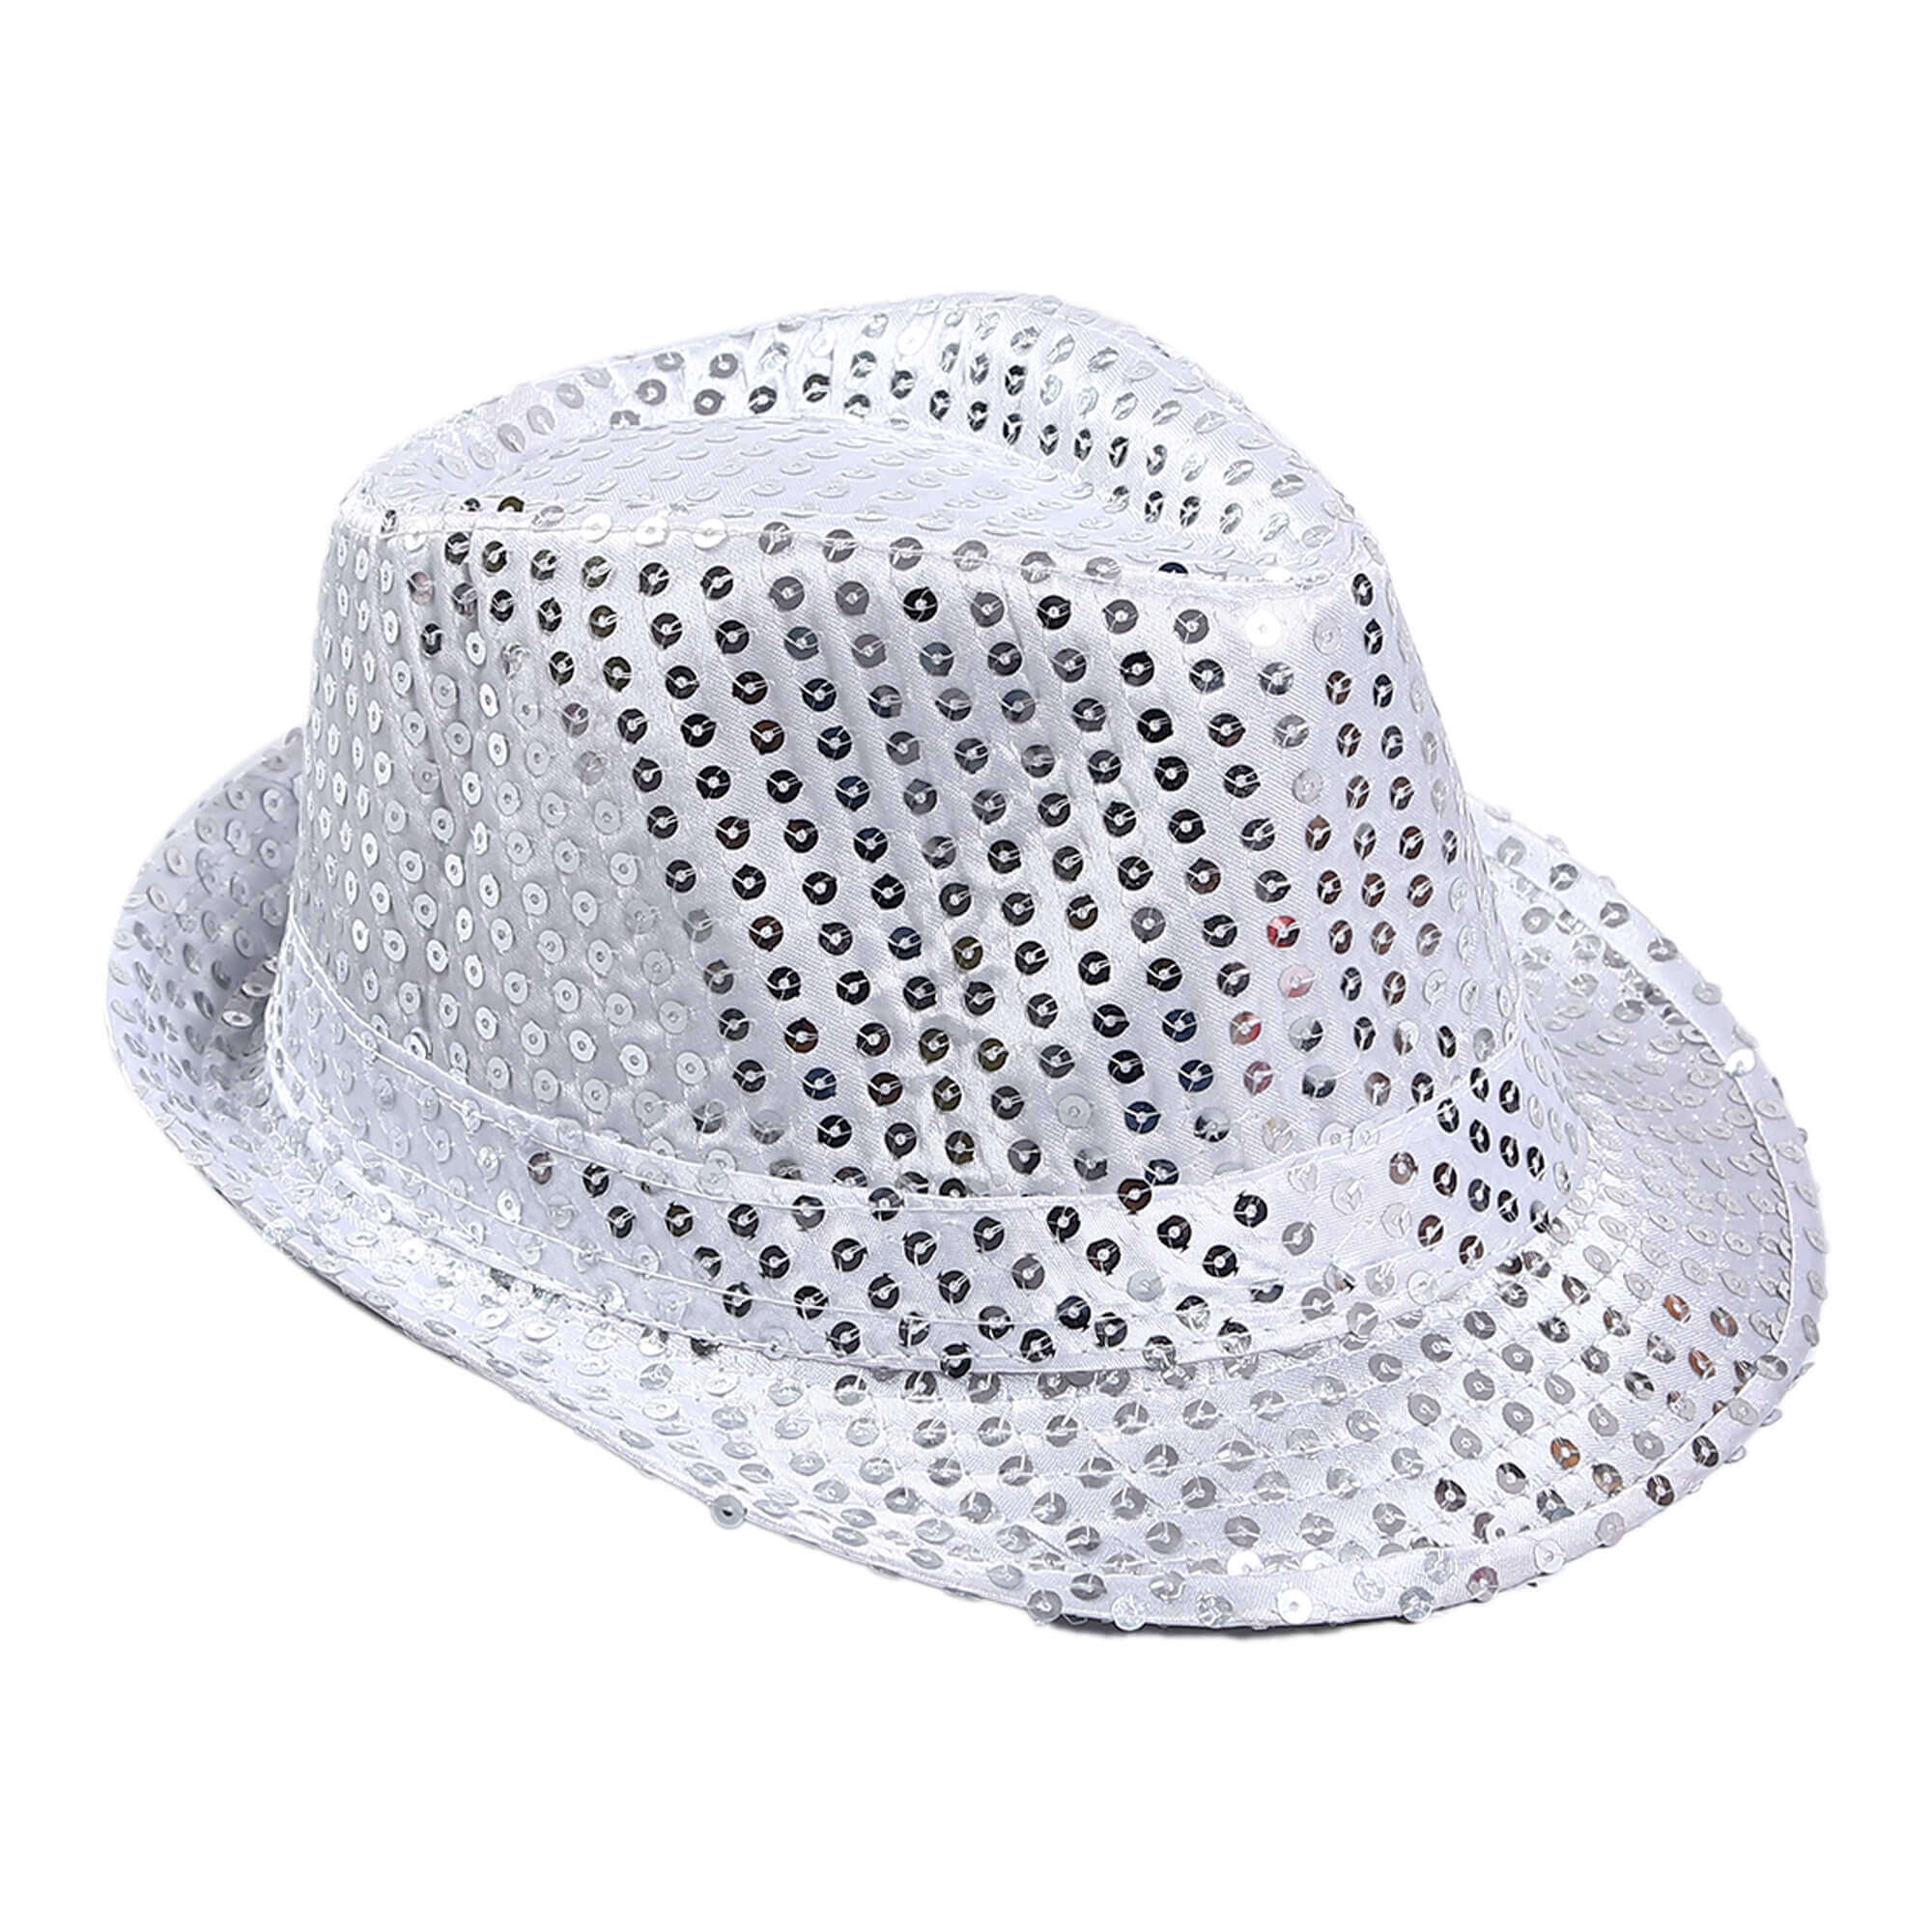 Çocuk Boy Gümüş Payetli Şapka Gösteri Şapkası Michael Jackson Şapkası 54 No (Lisinya)